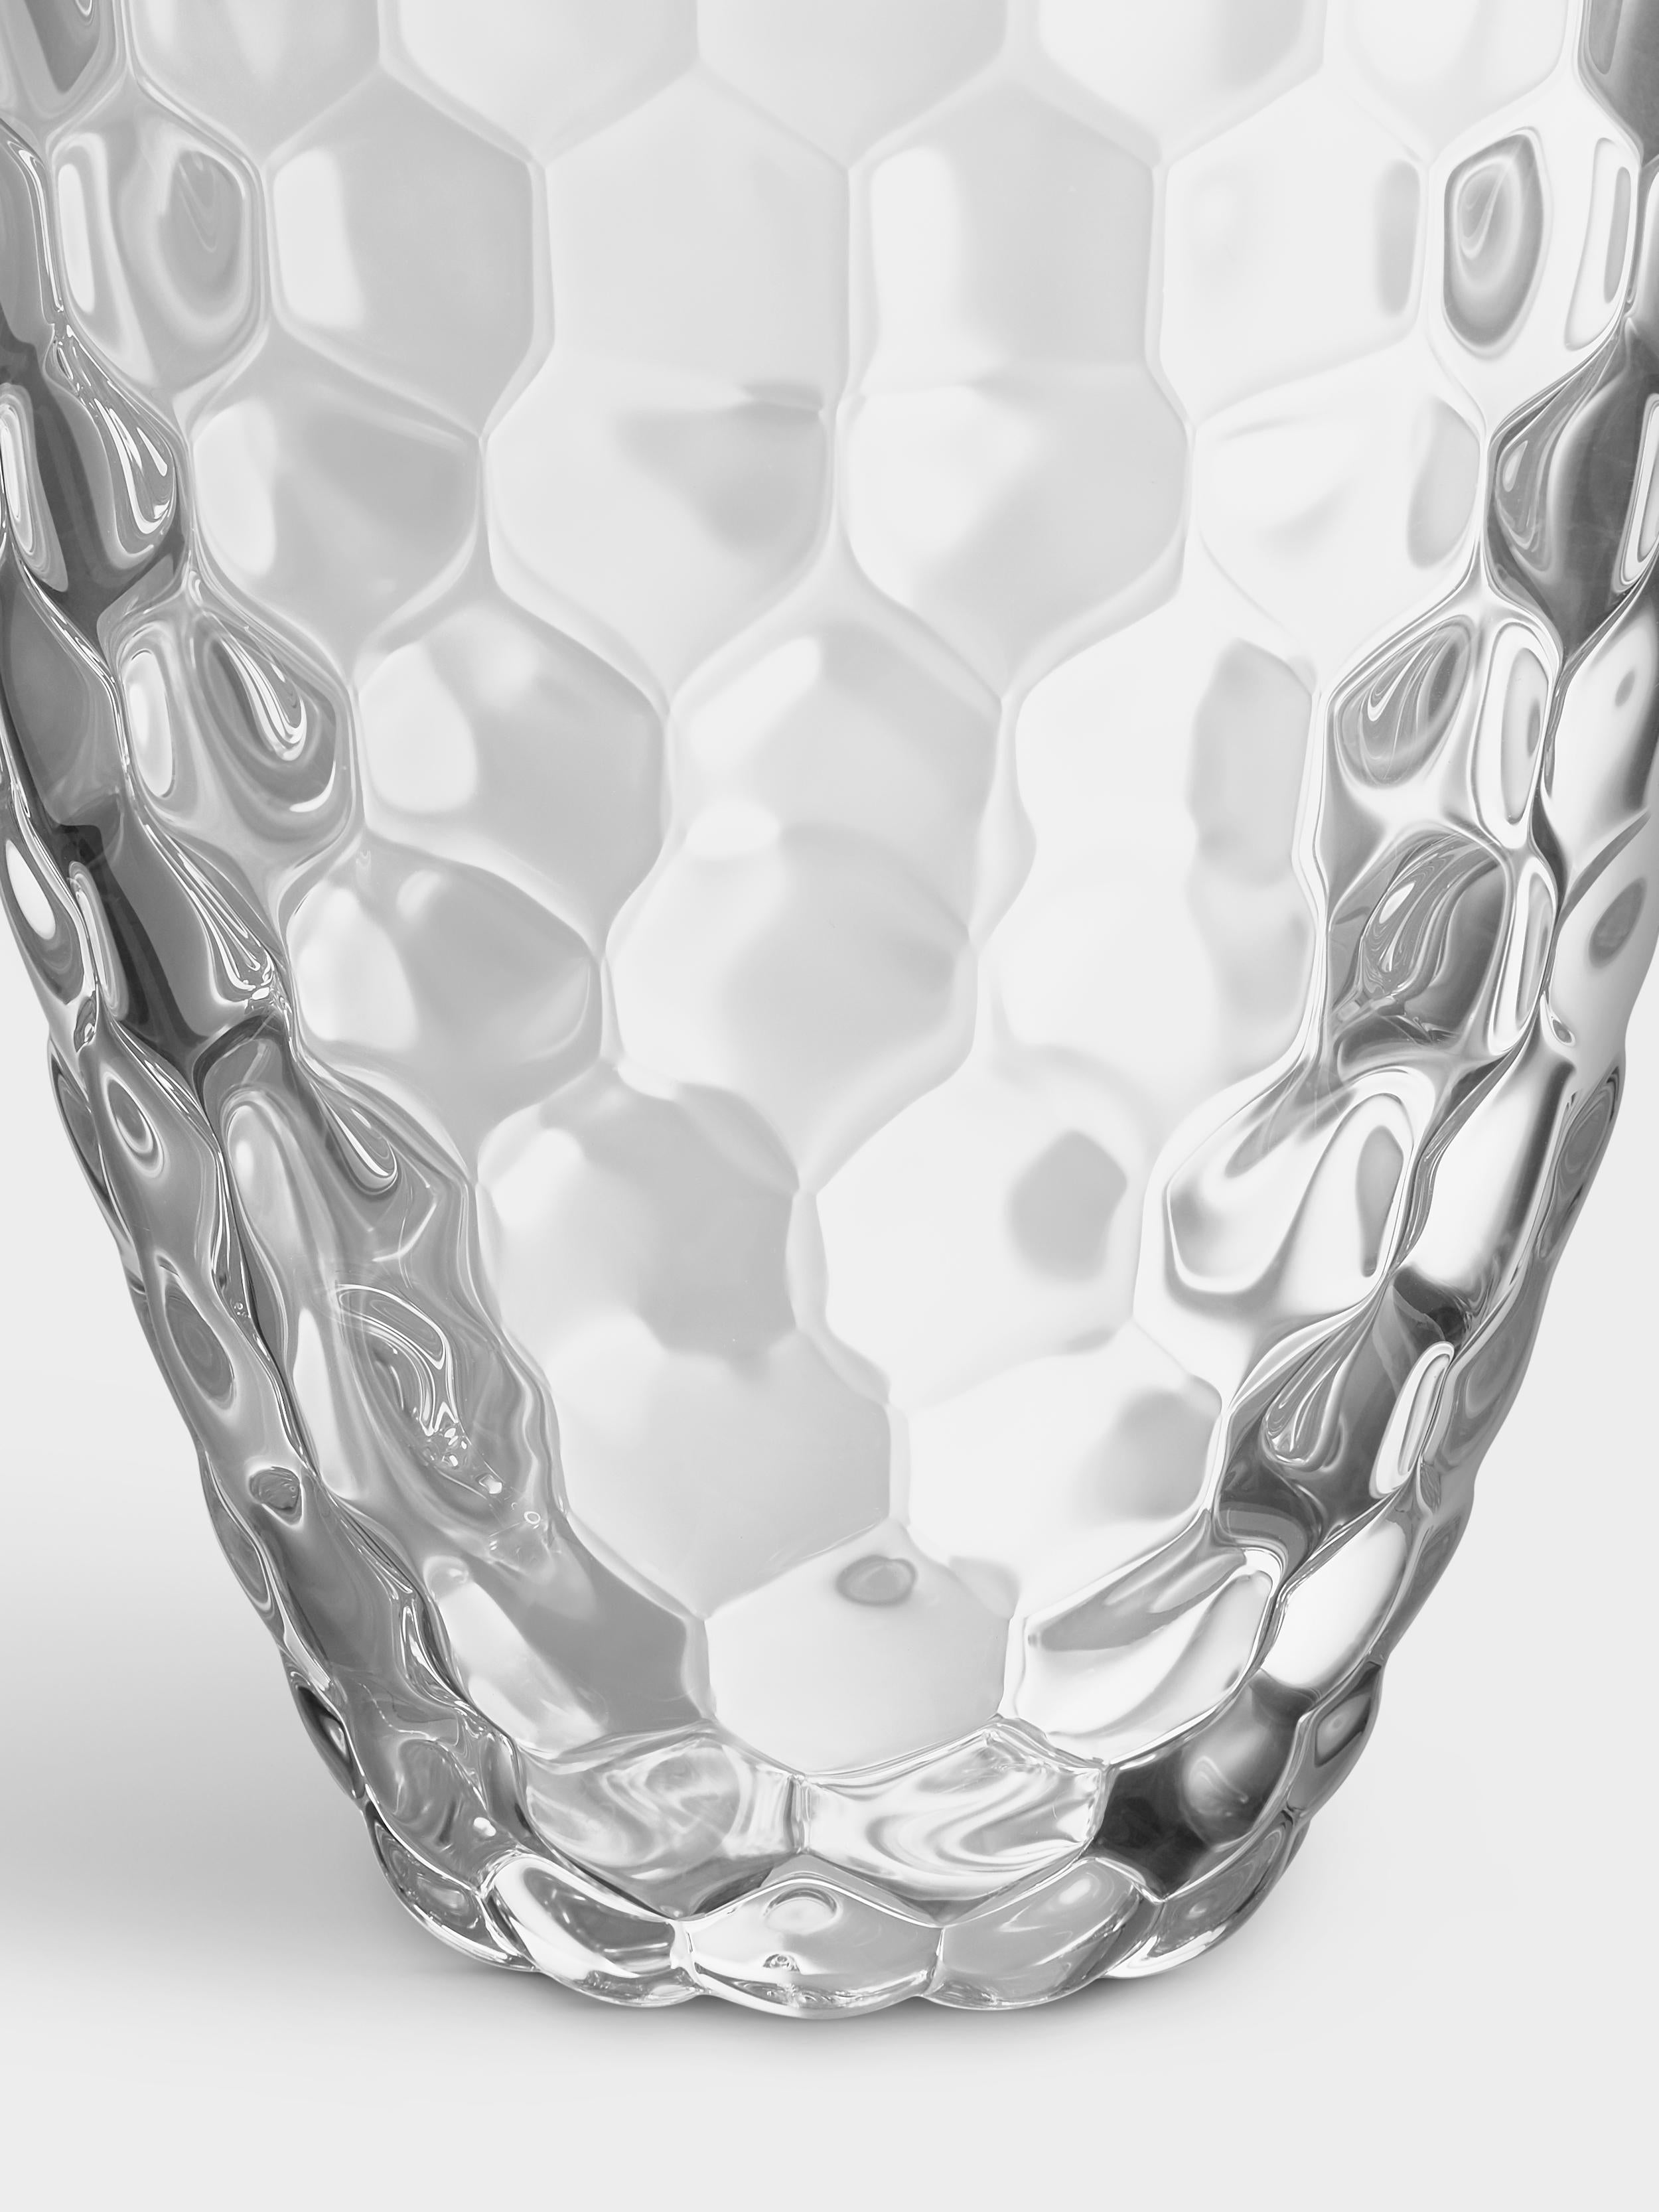 Raspberry ist ein beliebter Klassiker von Orrefors. Die kleine Vase in klarem Kristall hat ein Design, das an eine Himbeere erinnert. Die runden Steinfrüchte verleihen ihr ein weiches Aussehen. Die Vase eignet sich perfekt für kurzstielige Blumen